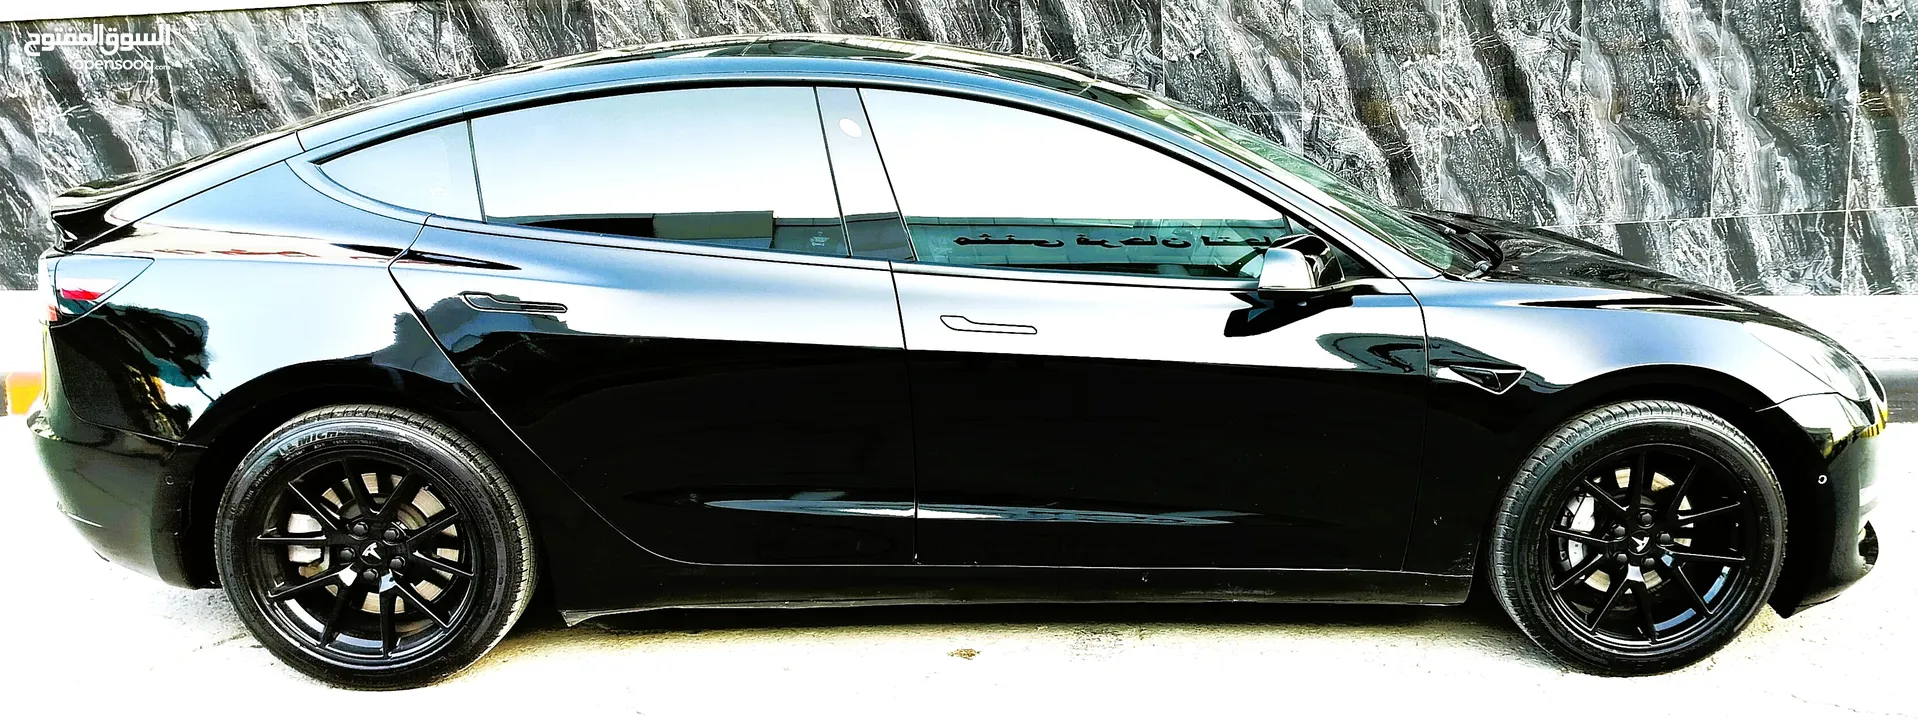 تيسلا 2021 model 3 فحص كامل 7 جيد لون مميز اسود ملوكي بحالة الوكالة للبيع بسعر لقطة ومحروووق